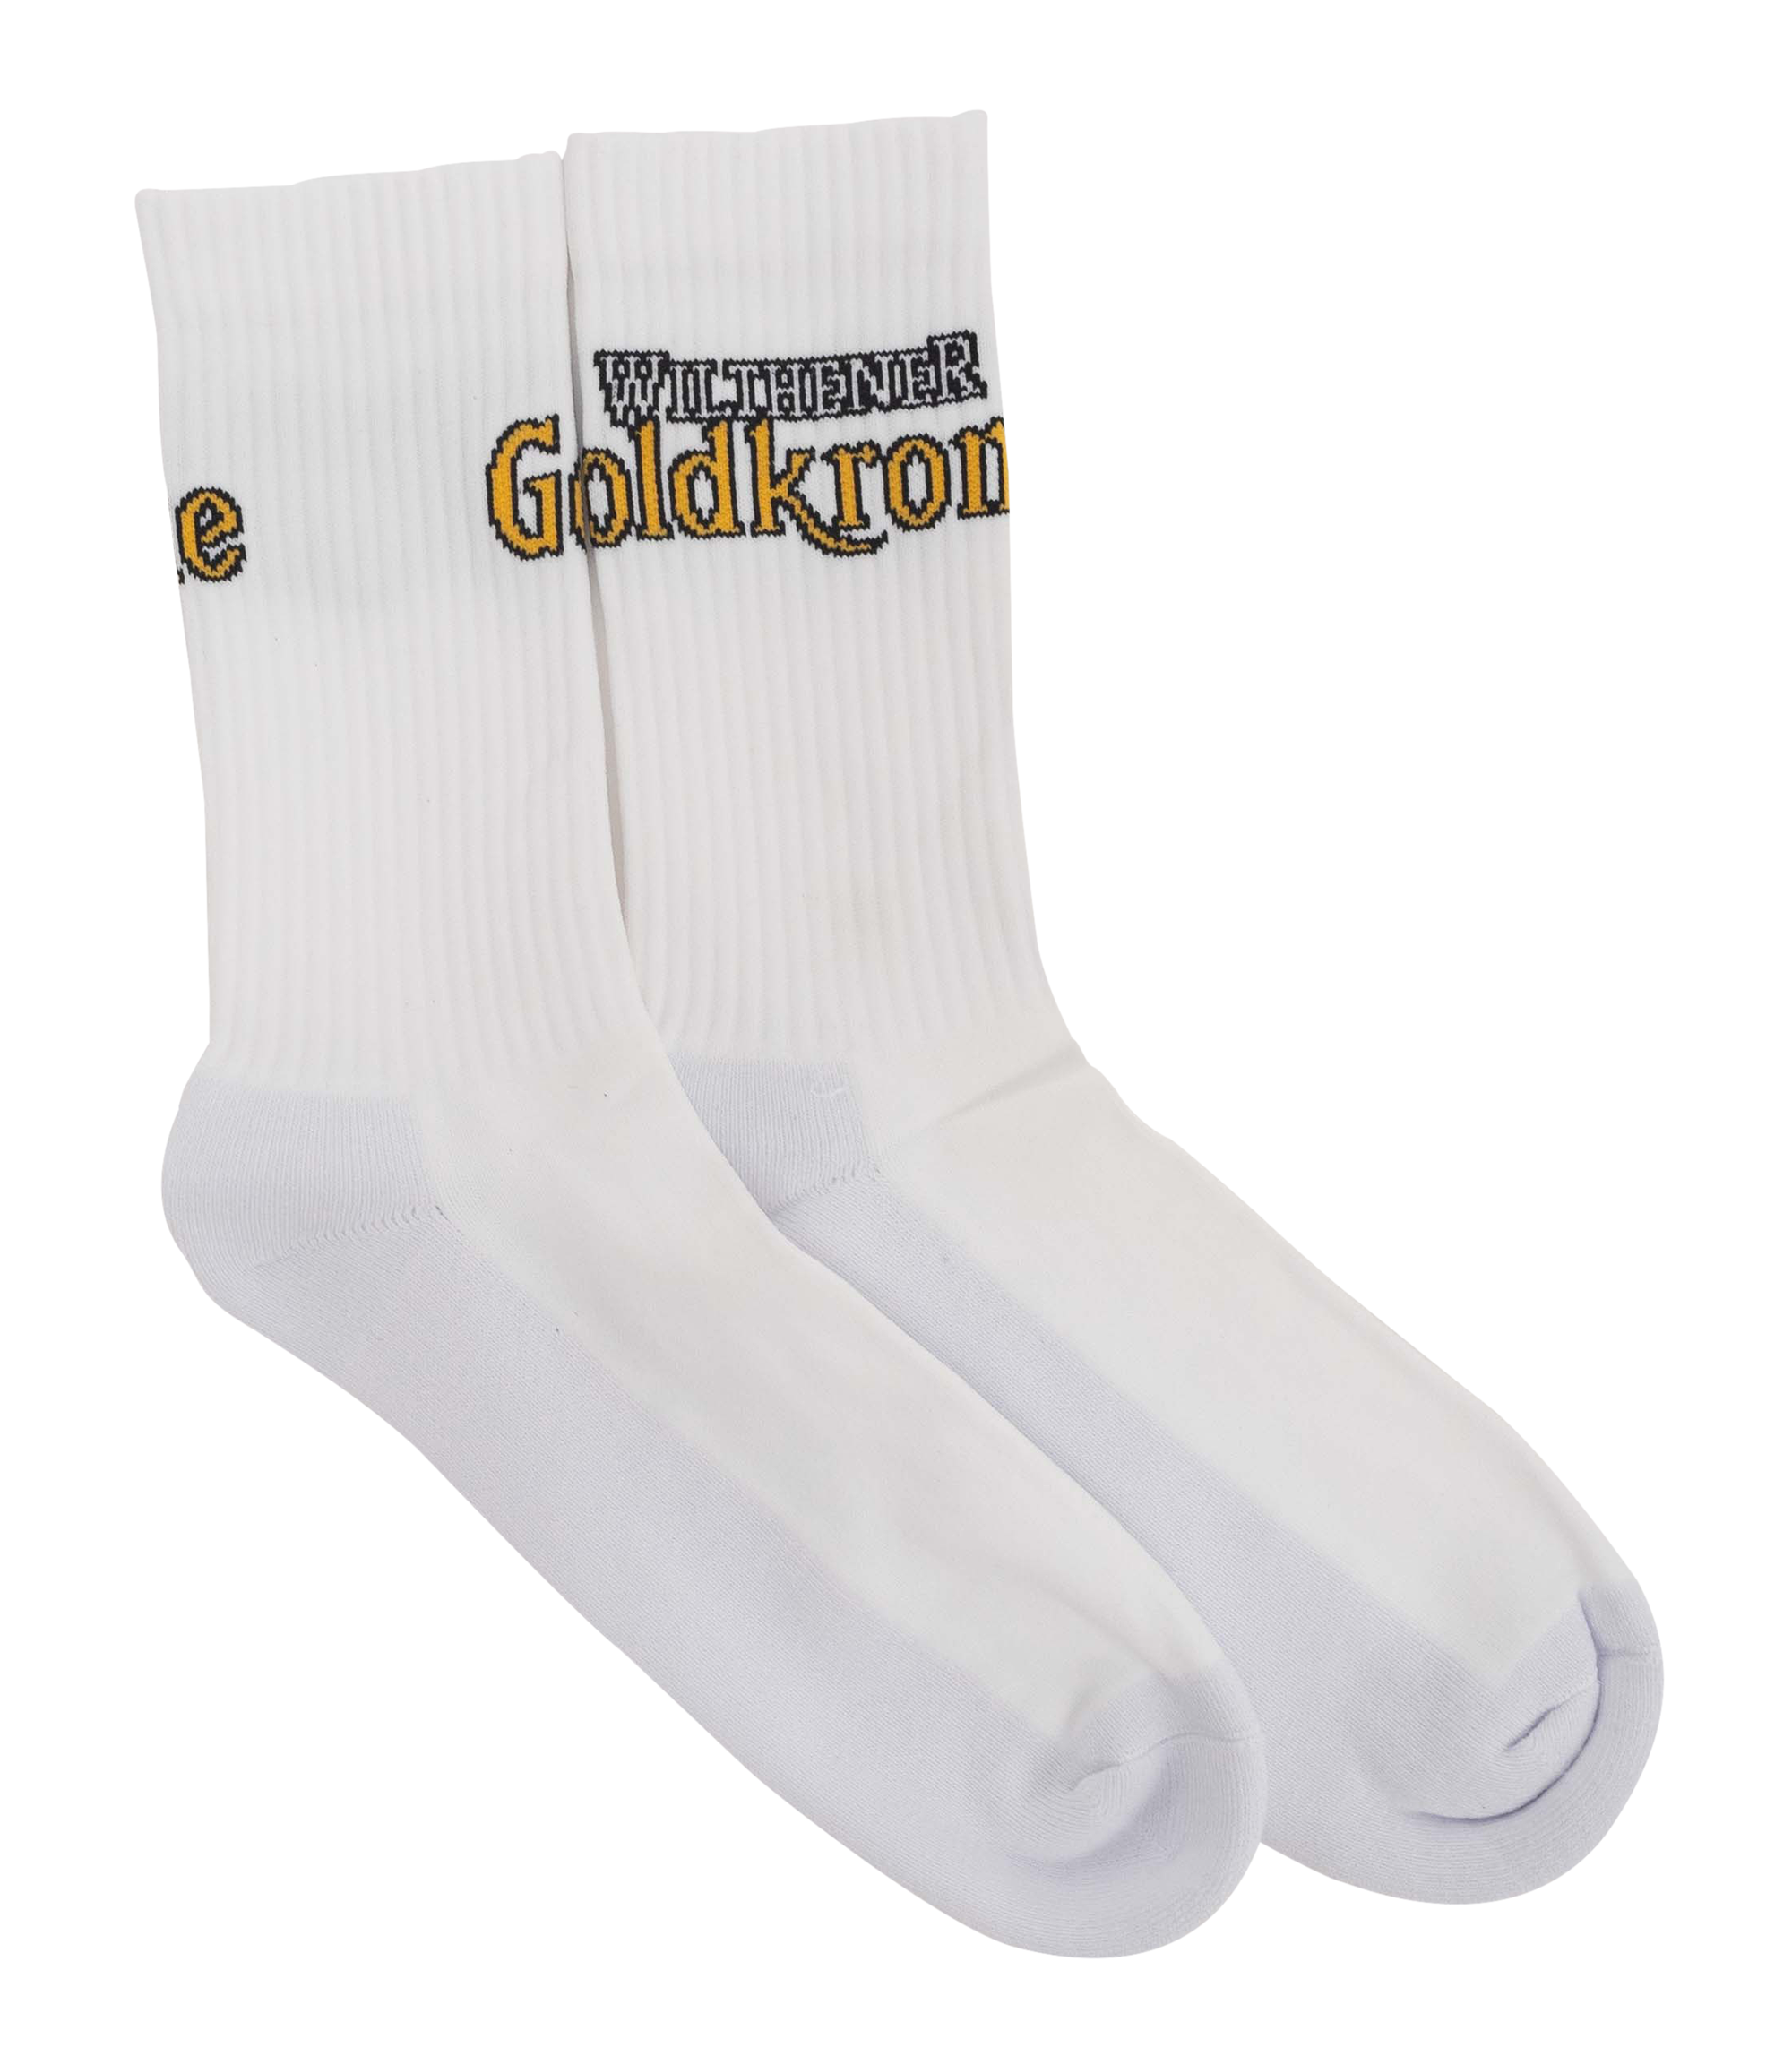 Wilthener Goldkrone Socken Logo seitlich Gr. 43-46